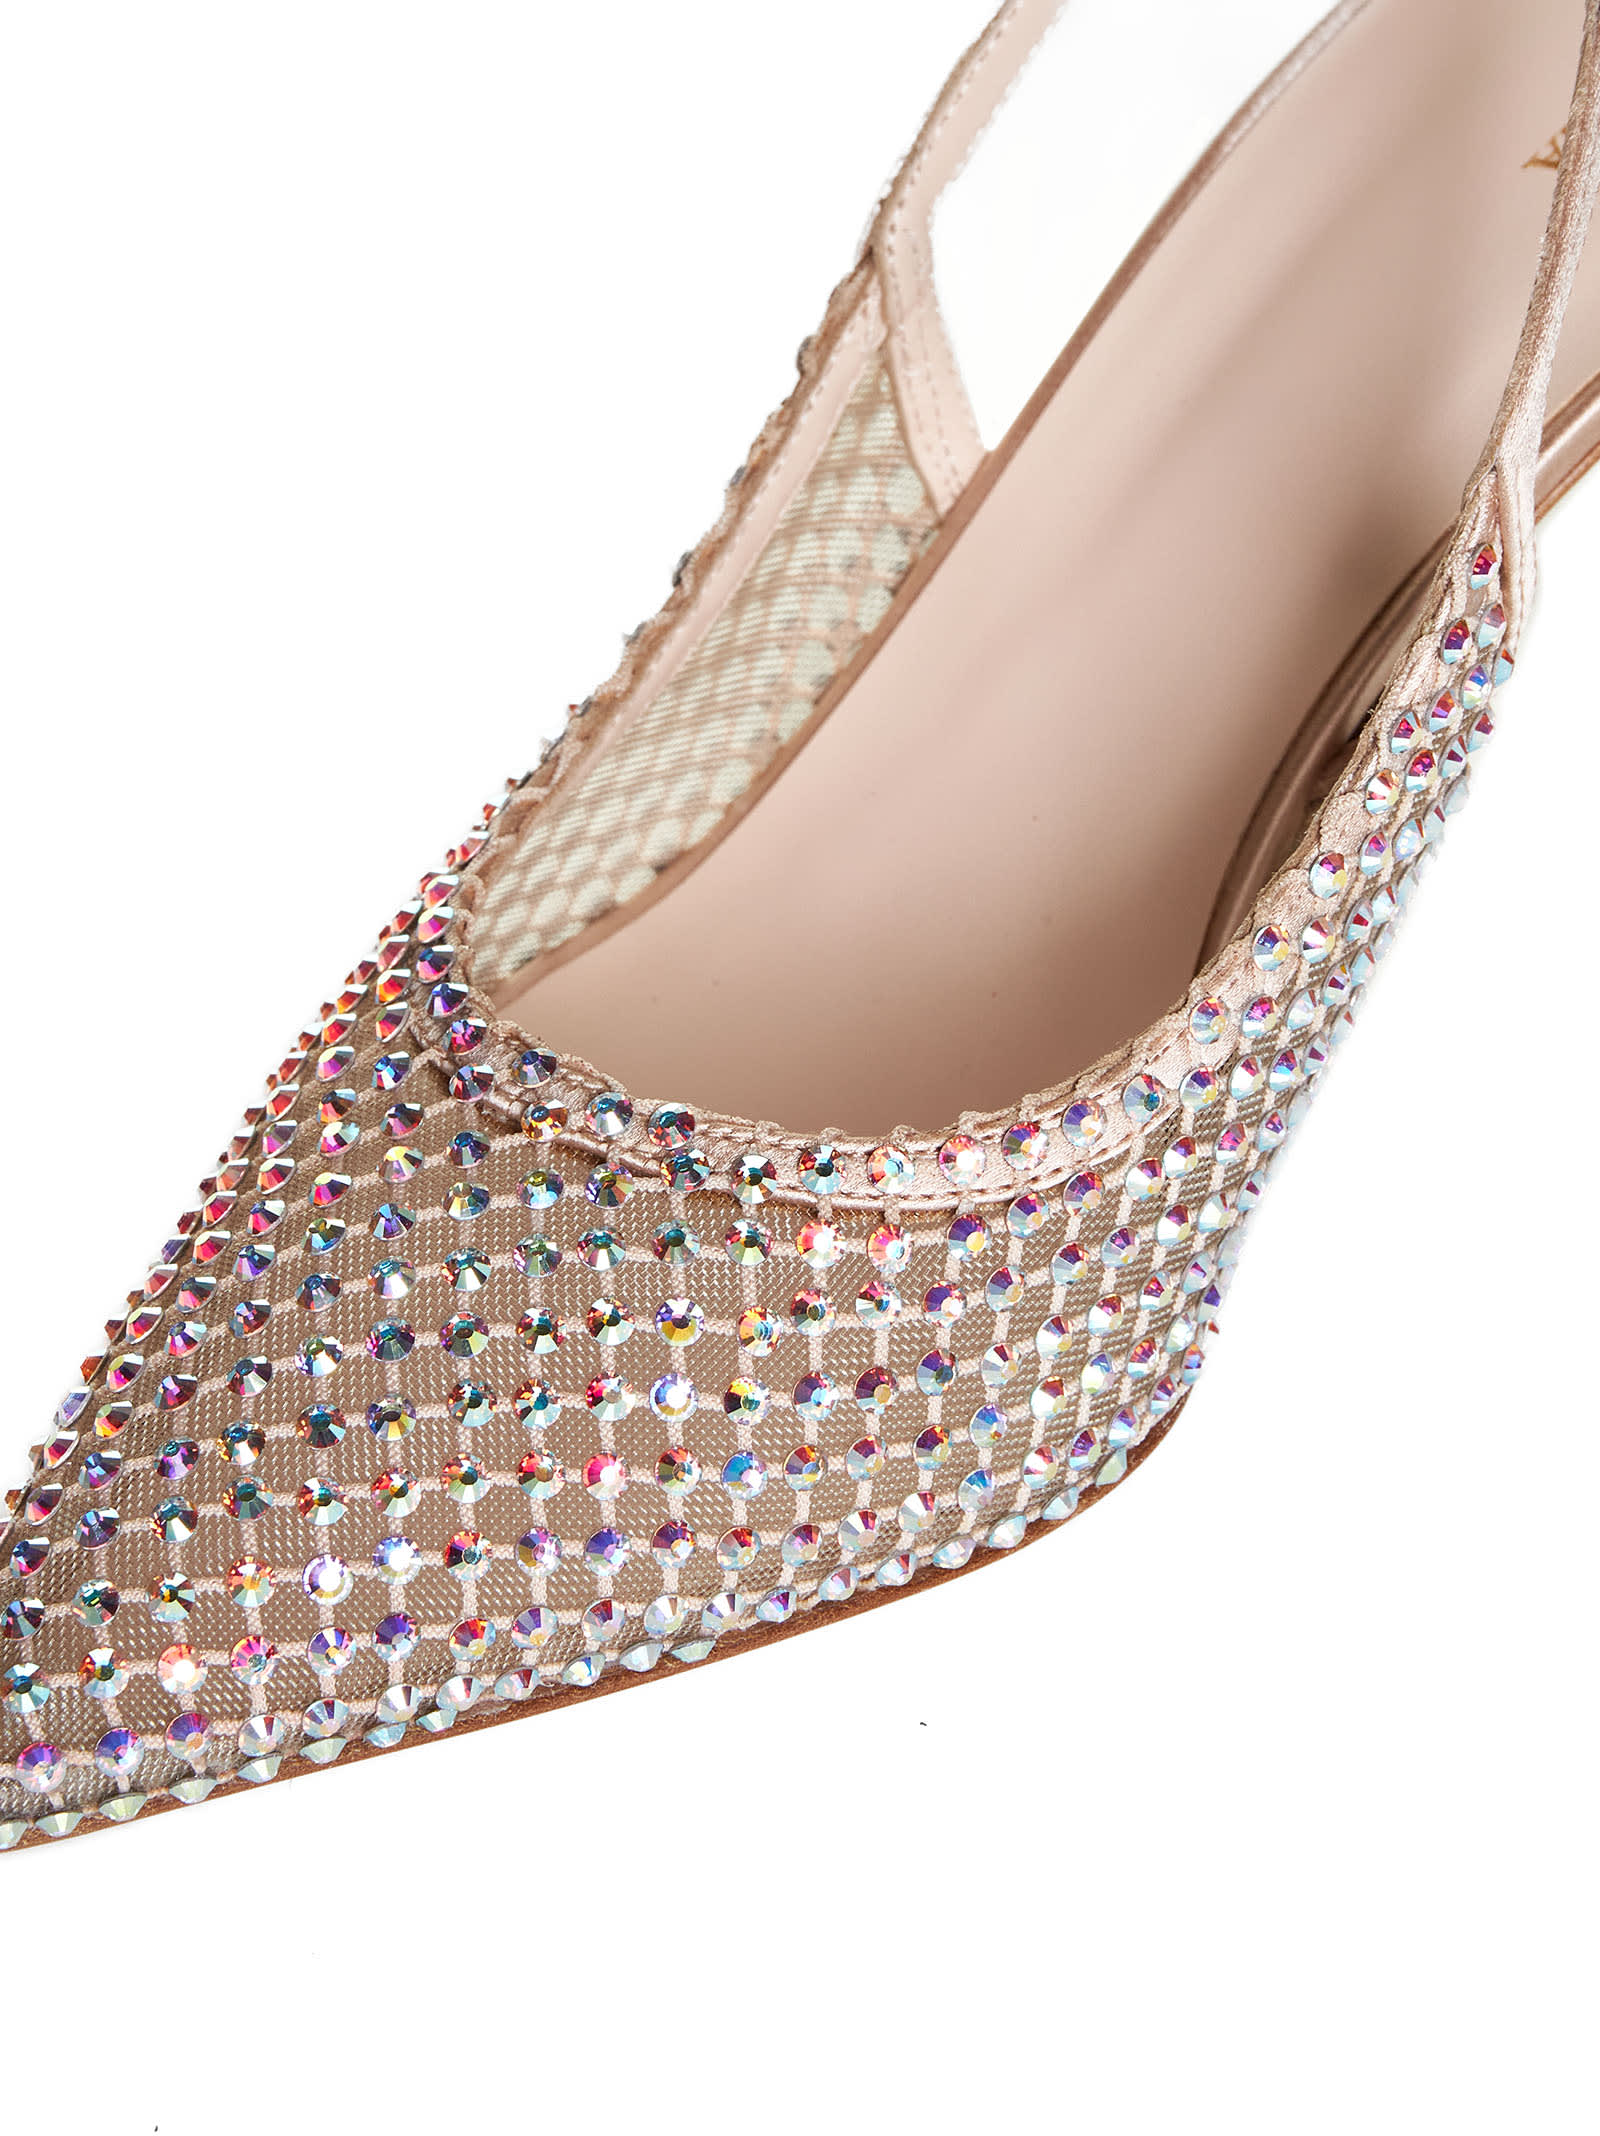 Shop Le Silla High-heeled Shoe In Skin